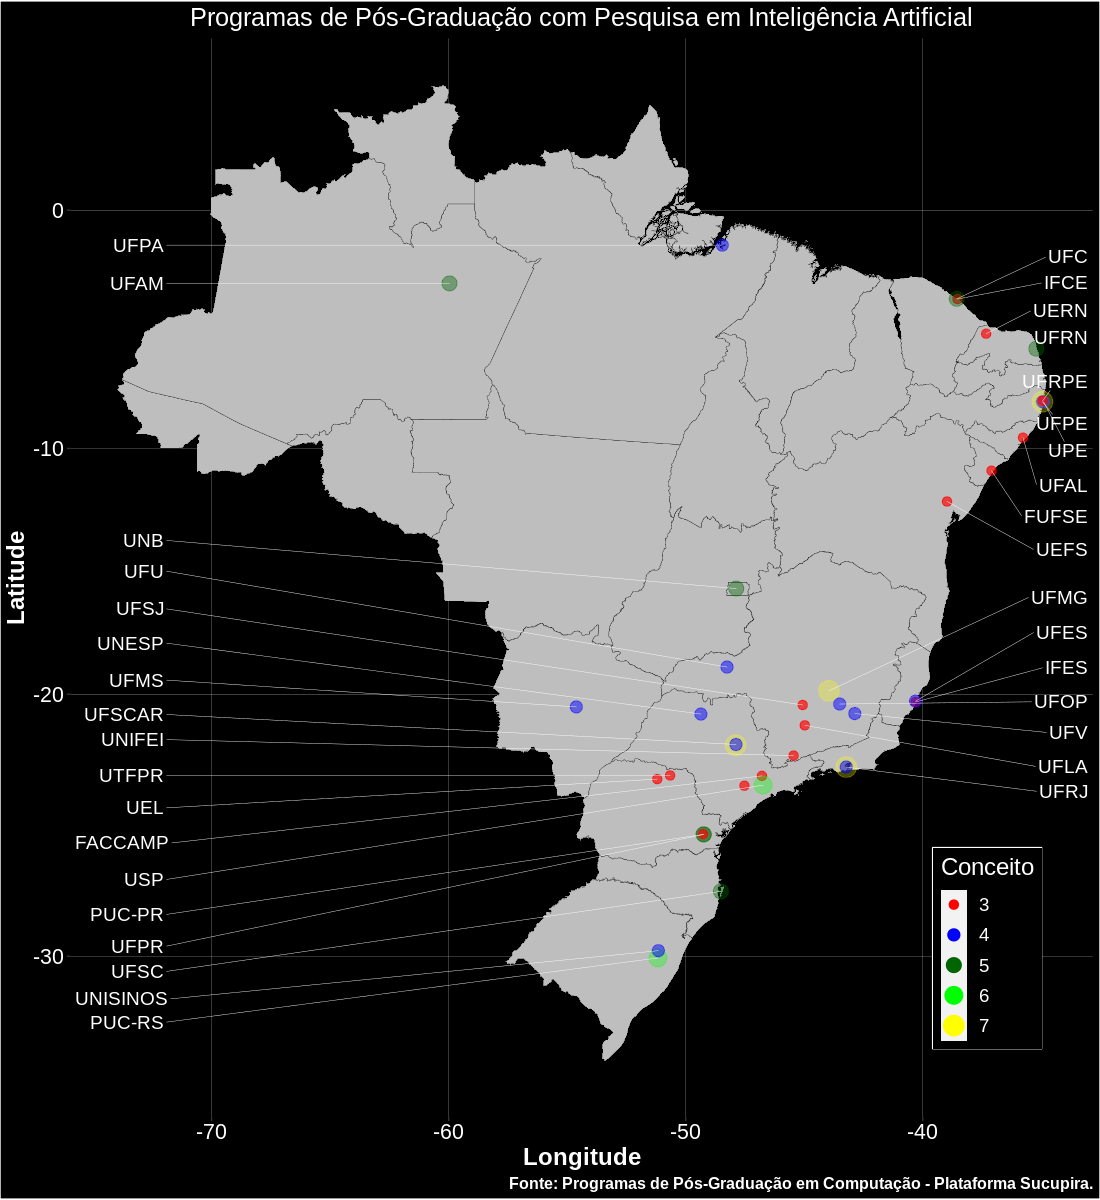 Mapa com os Programas de Pós-Graduação em Computação do Brasil com pesquisa em Inteligência Artificial.